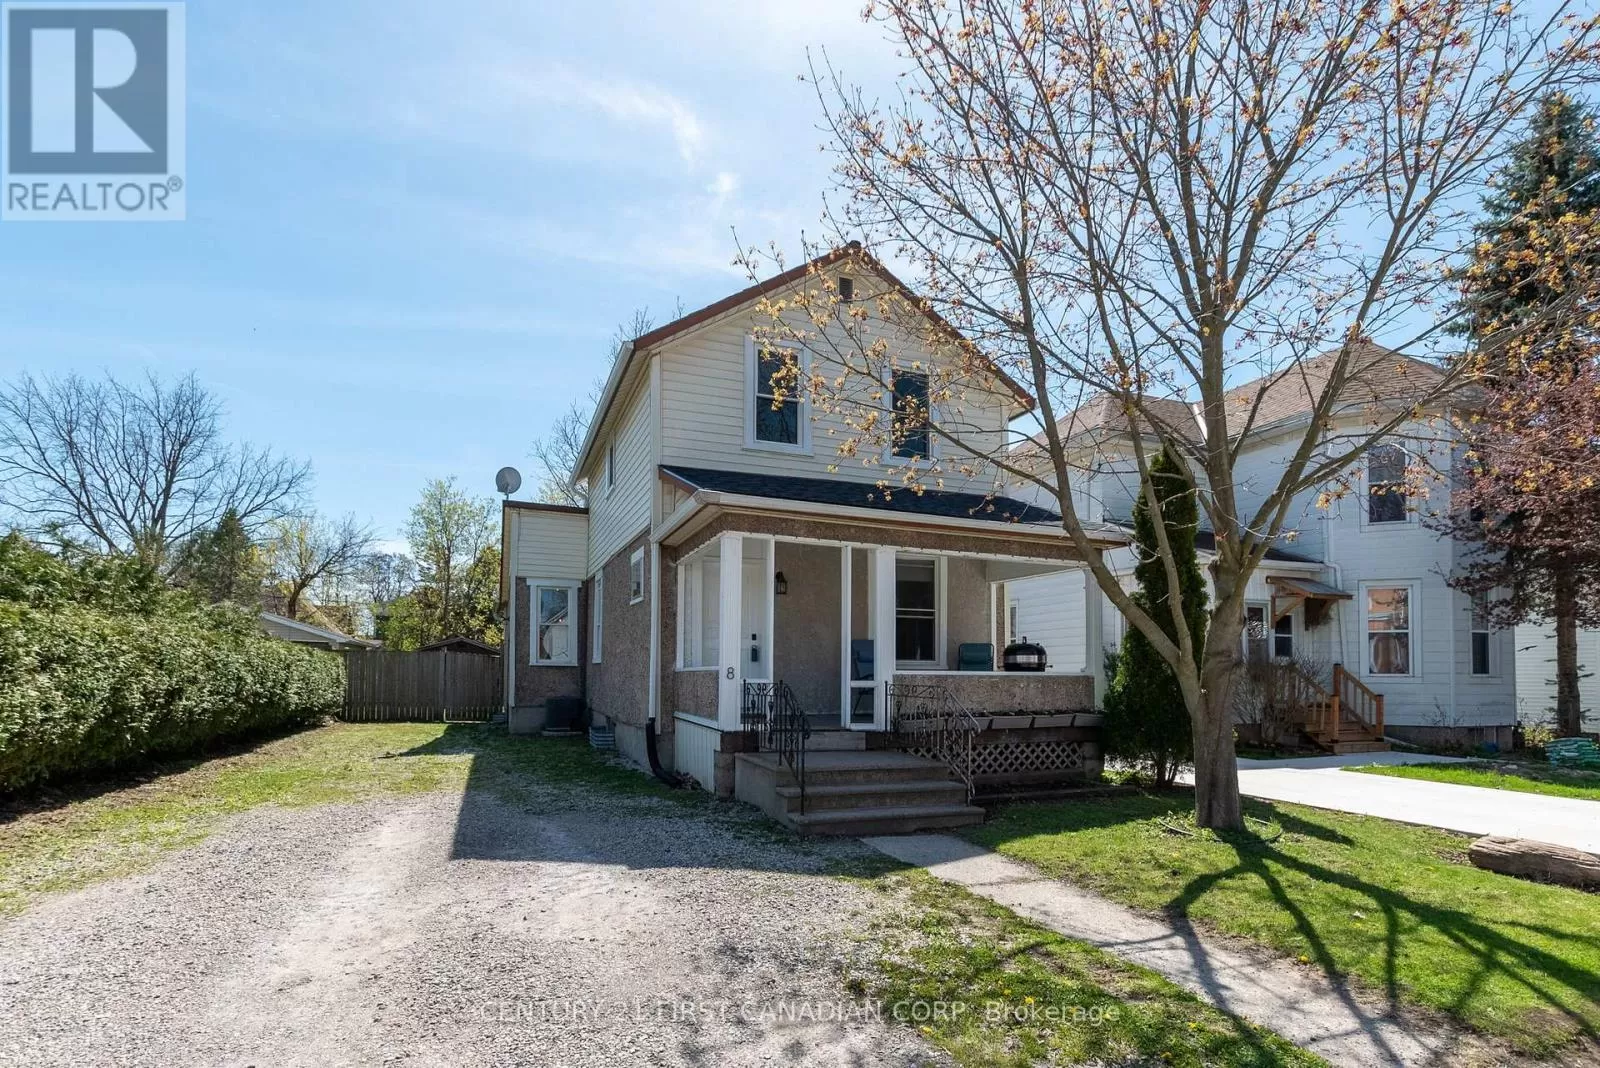 House for rent: 8 Omemee Street, Central Elgin, Ontario N5P 1V9